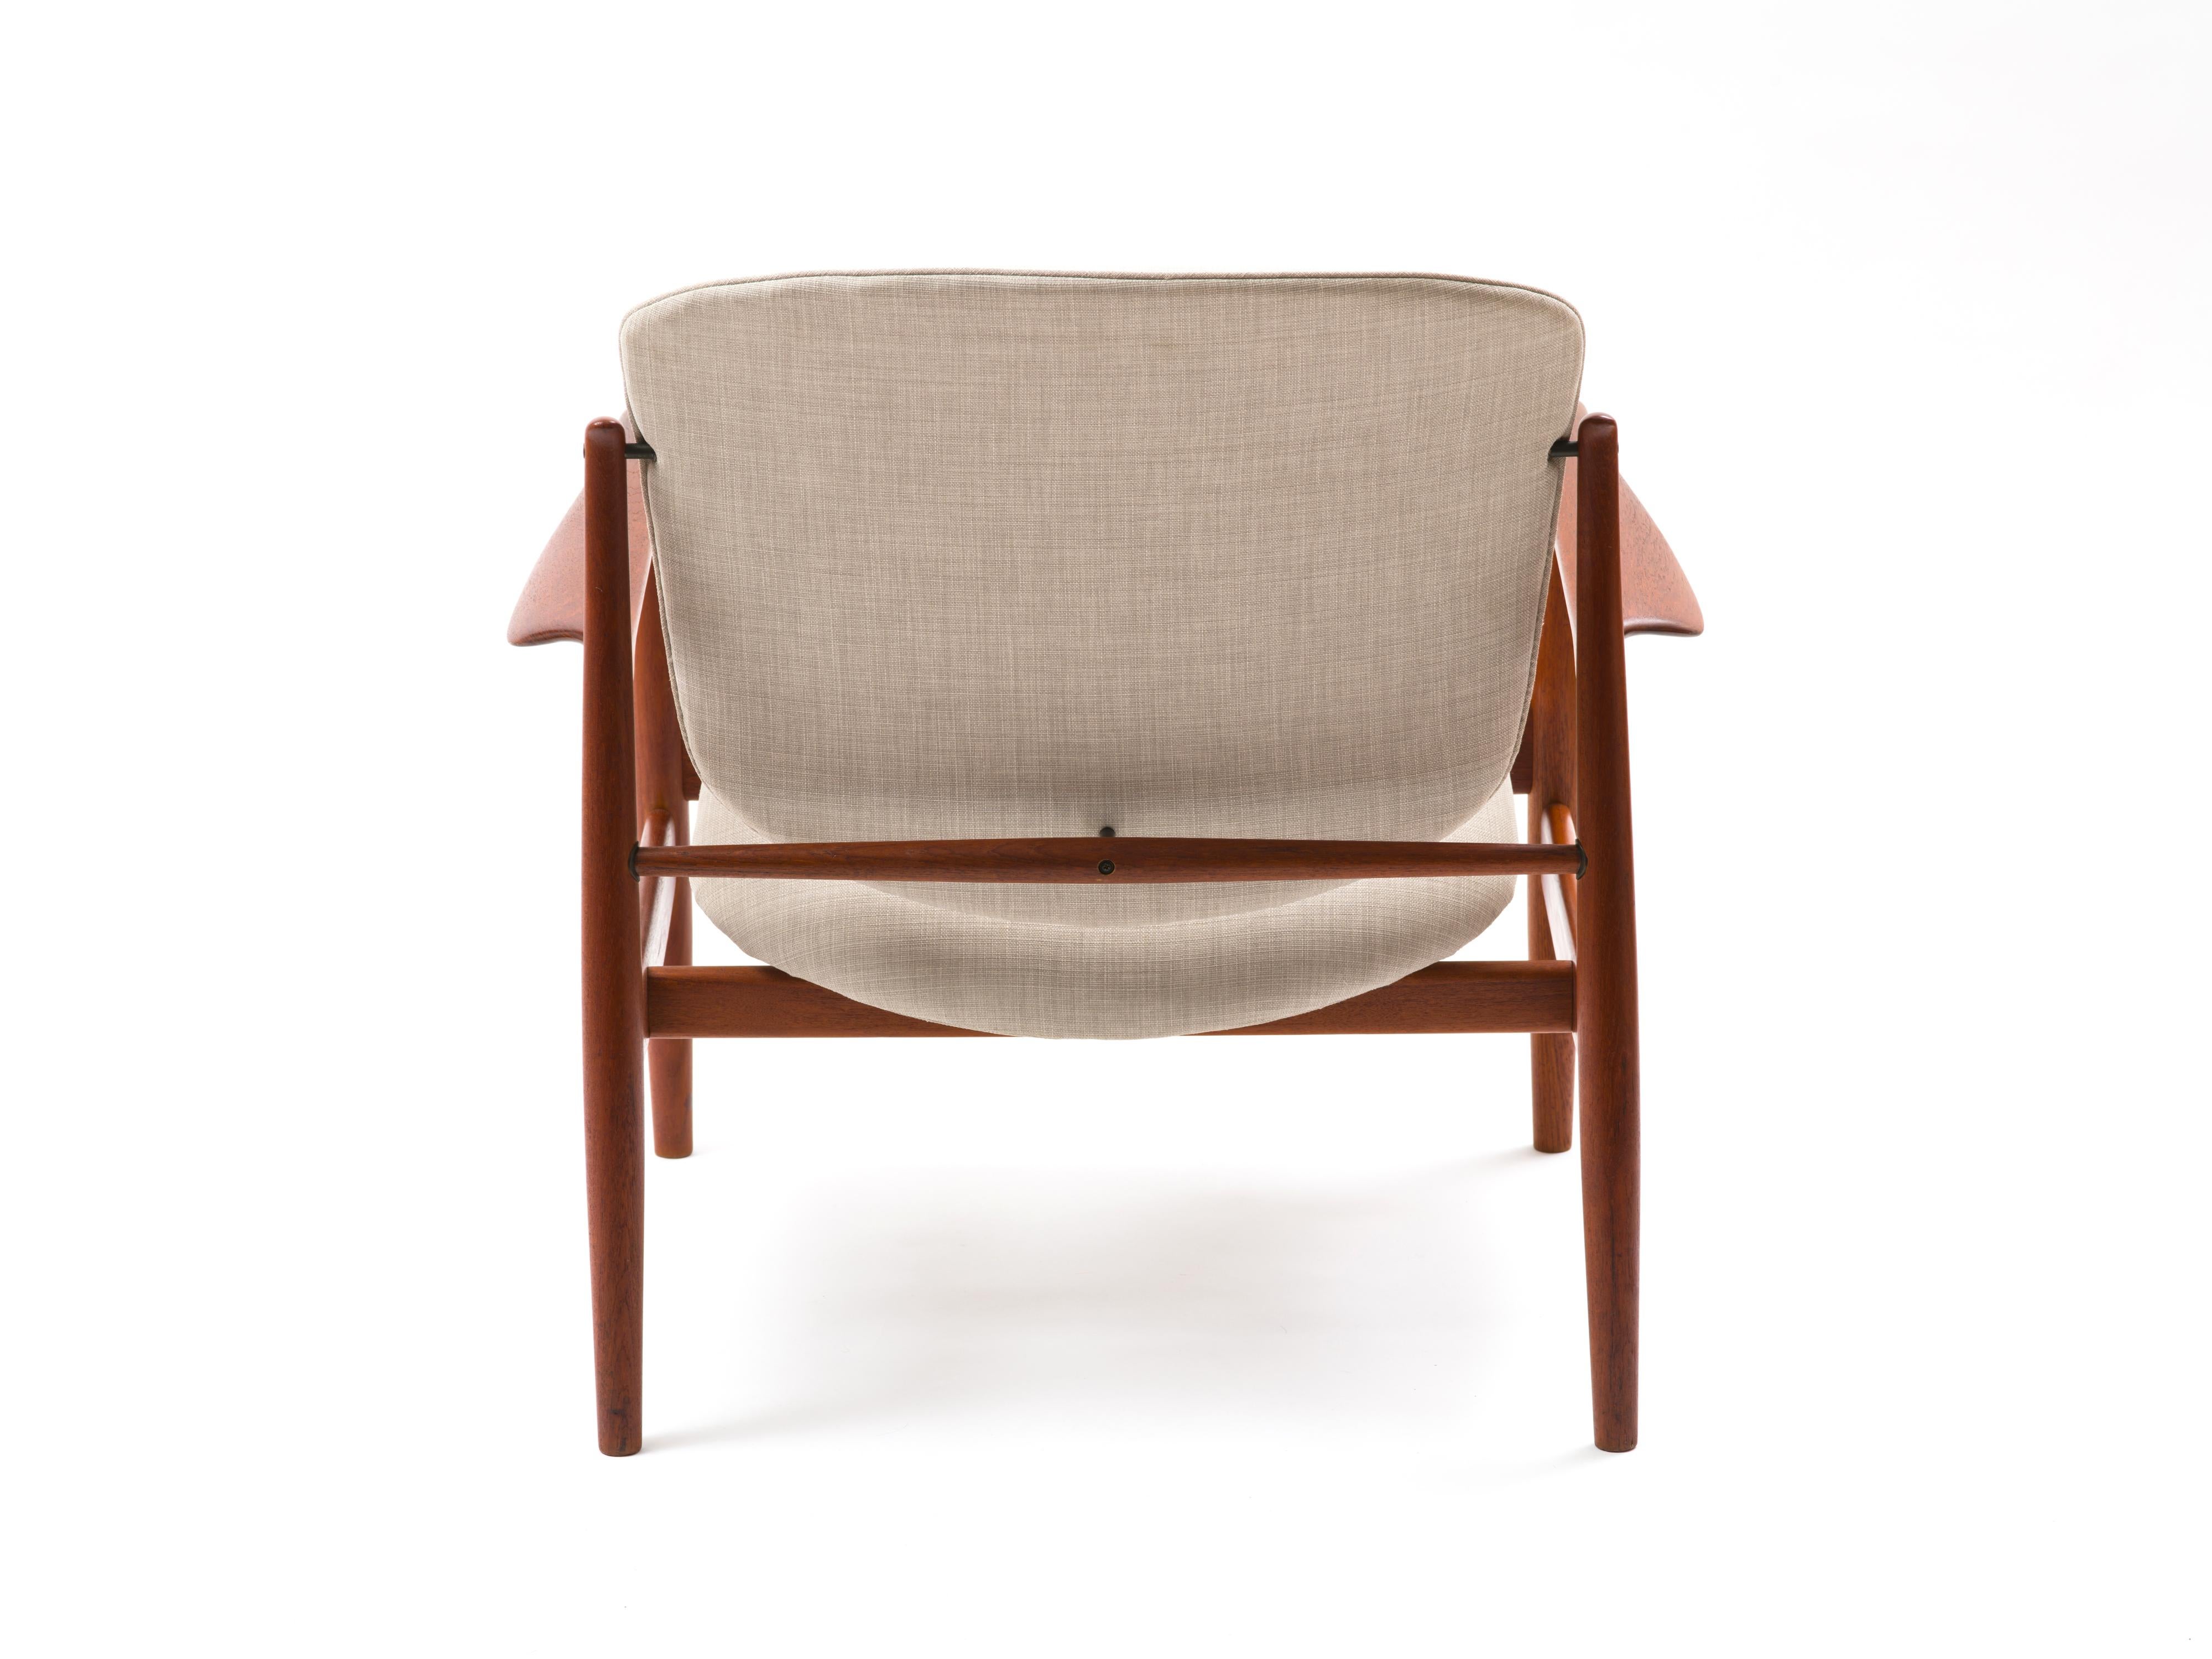 Mid-20th Century Finn Juhl Lounge Chair Model FD 136 in Teak For Sale